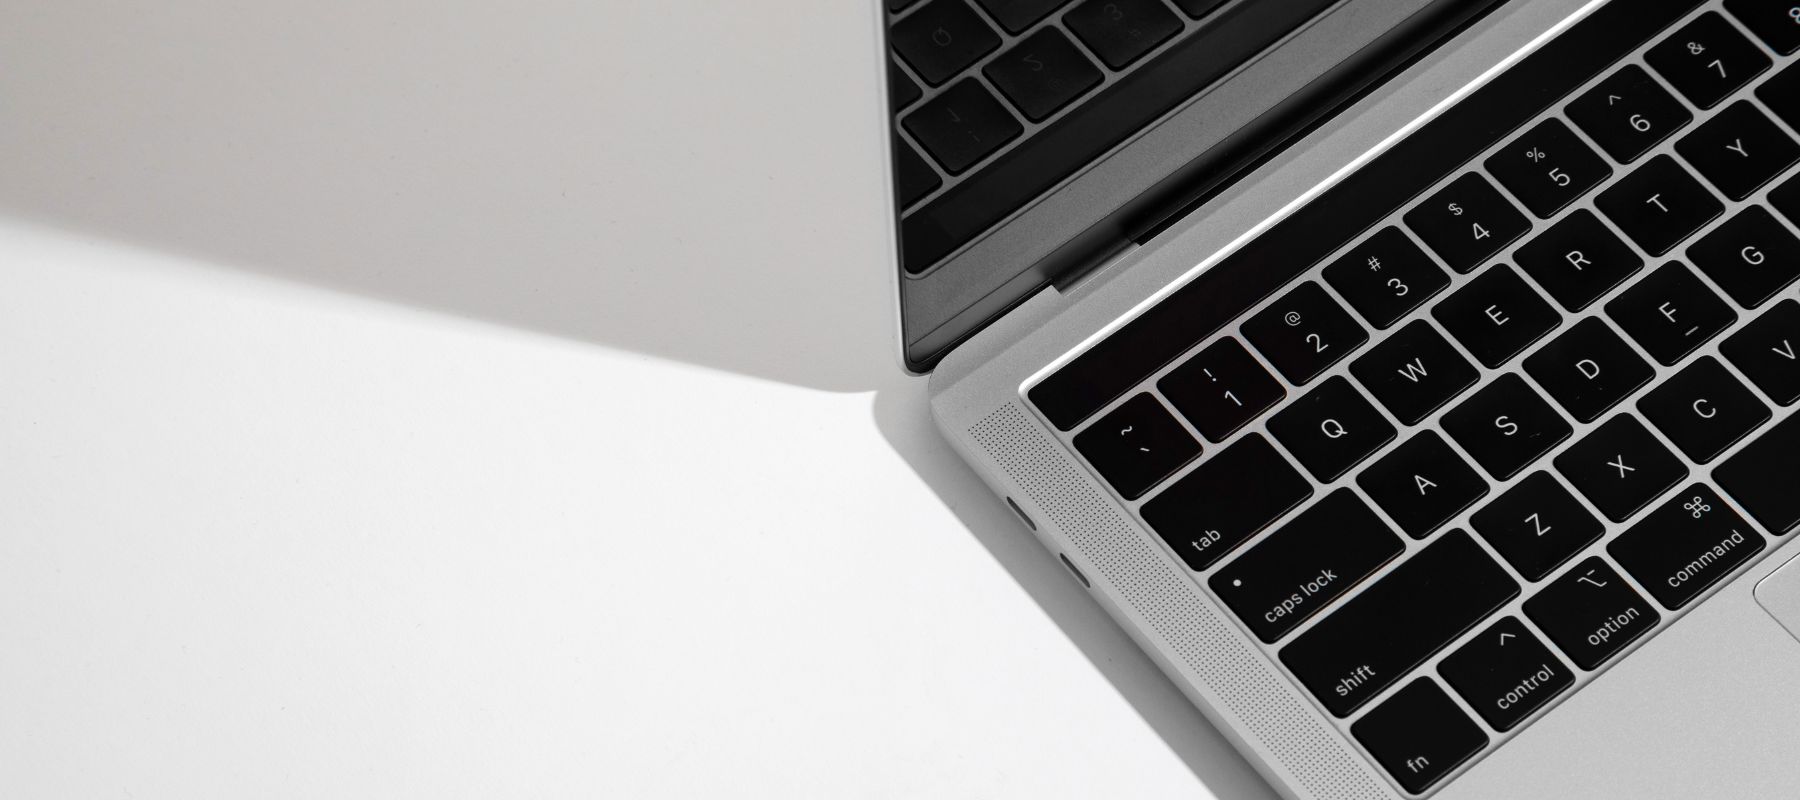 ¿Cómo cambiar el idioma del teclado en Mac?